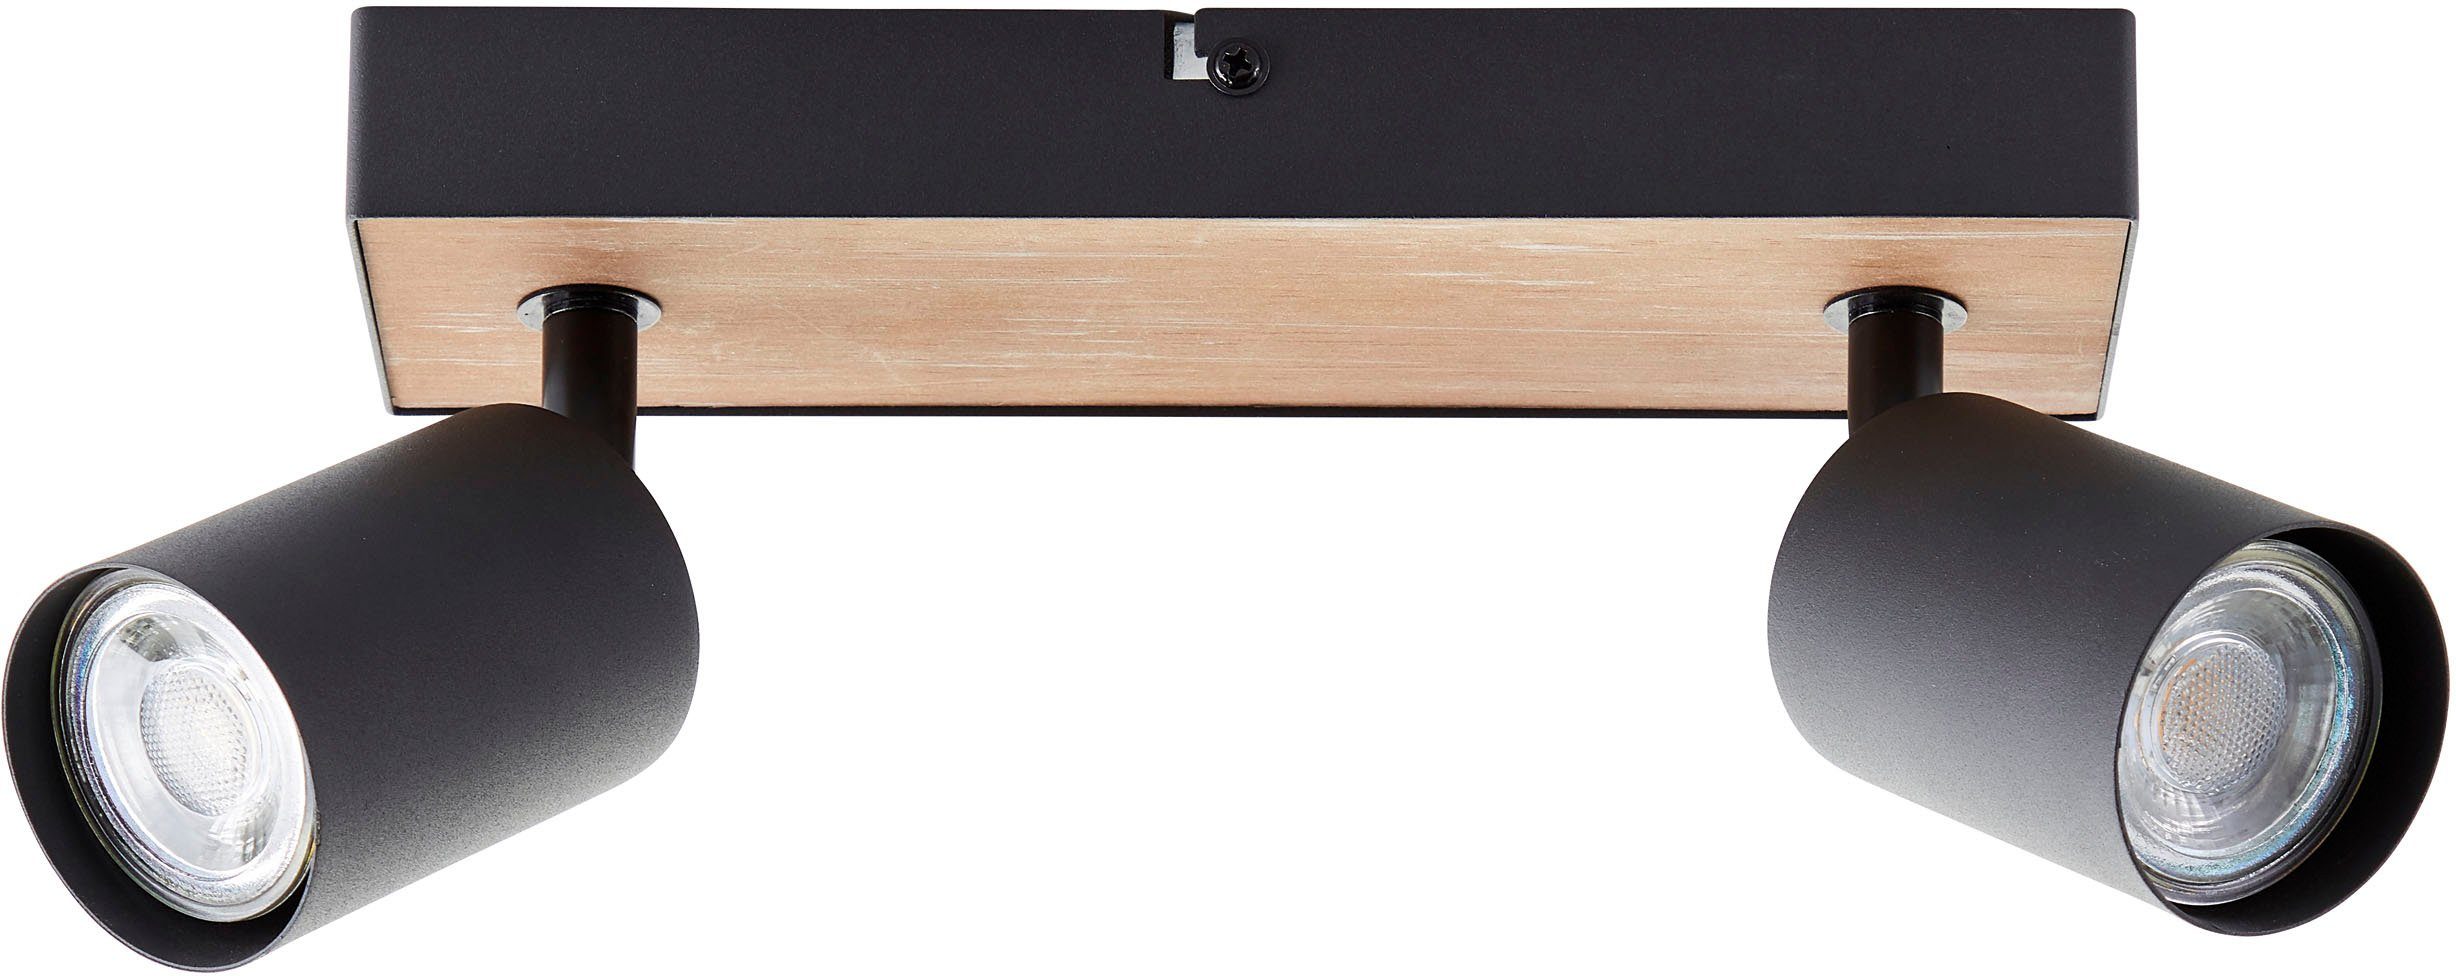 Brilliant Deckenstrahler Jello Wood, schwenkbar, Metall/Holz wechselbar, 15x24x8 Spotbalken 345lm, LED 3000K, GU10, cm, Warmweiß